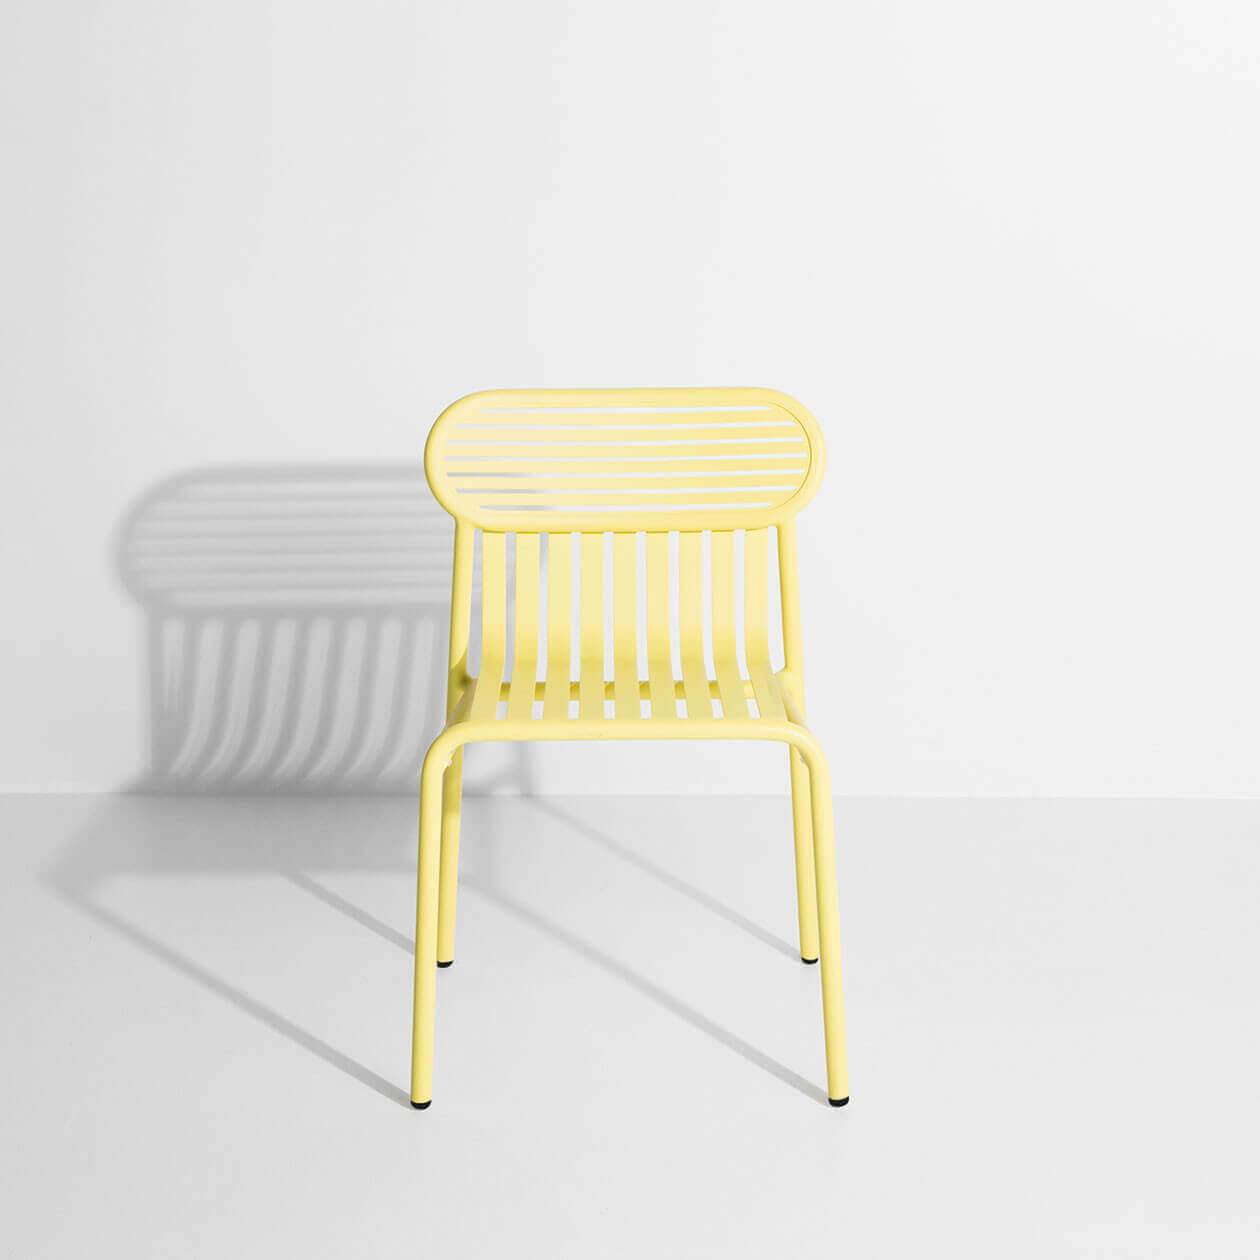 Week-End Gartenstuhl in Yellow präsentiert im Onlineshop von KAQTU Design AG. Gartenstuhl ist von Petite Friture